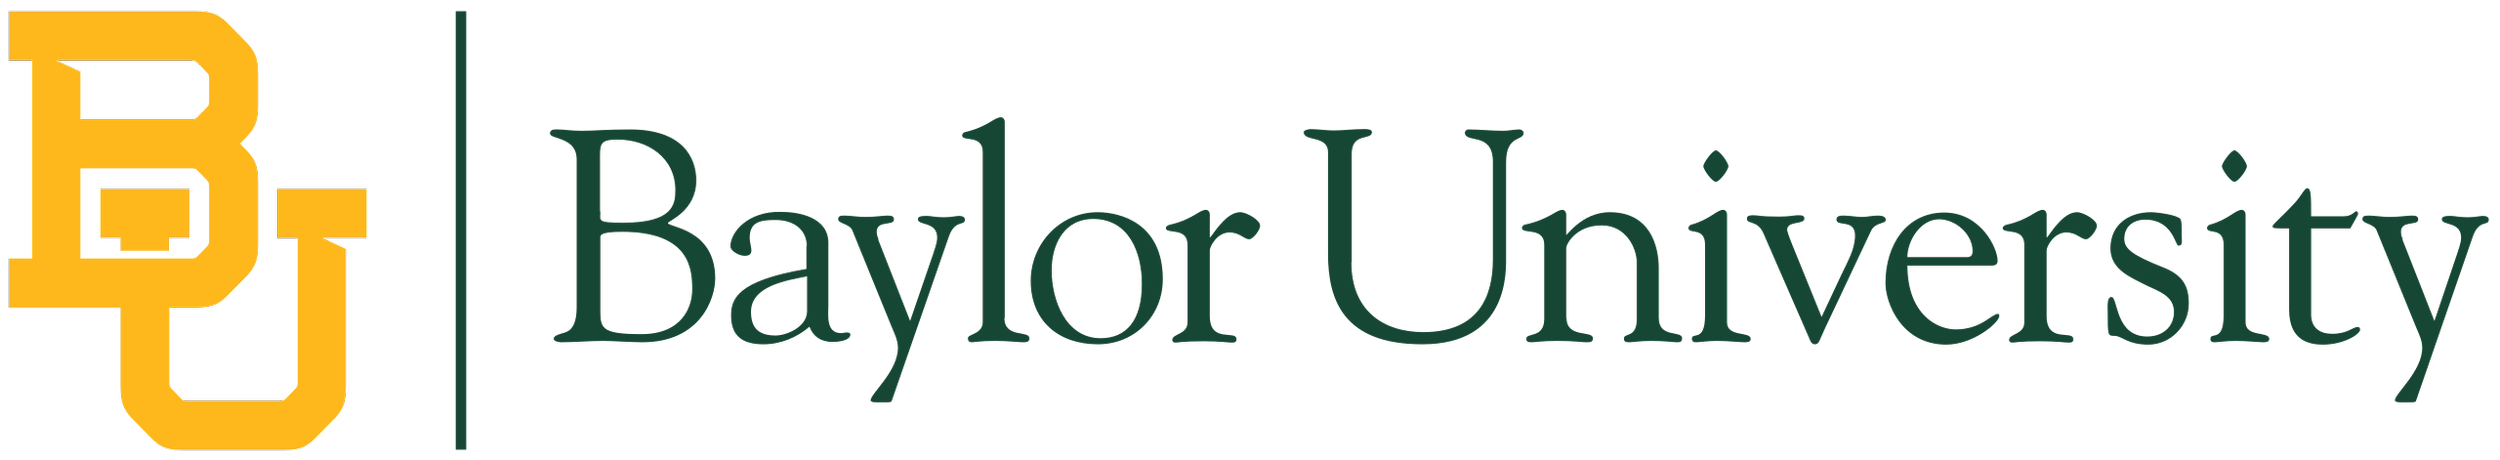 2560px-Baylor_University_logo.svg.png